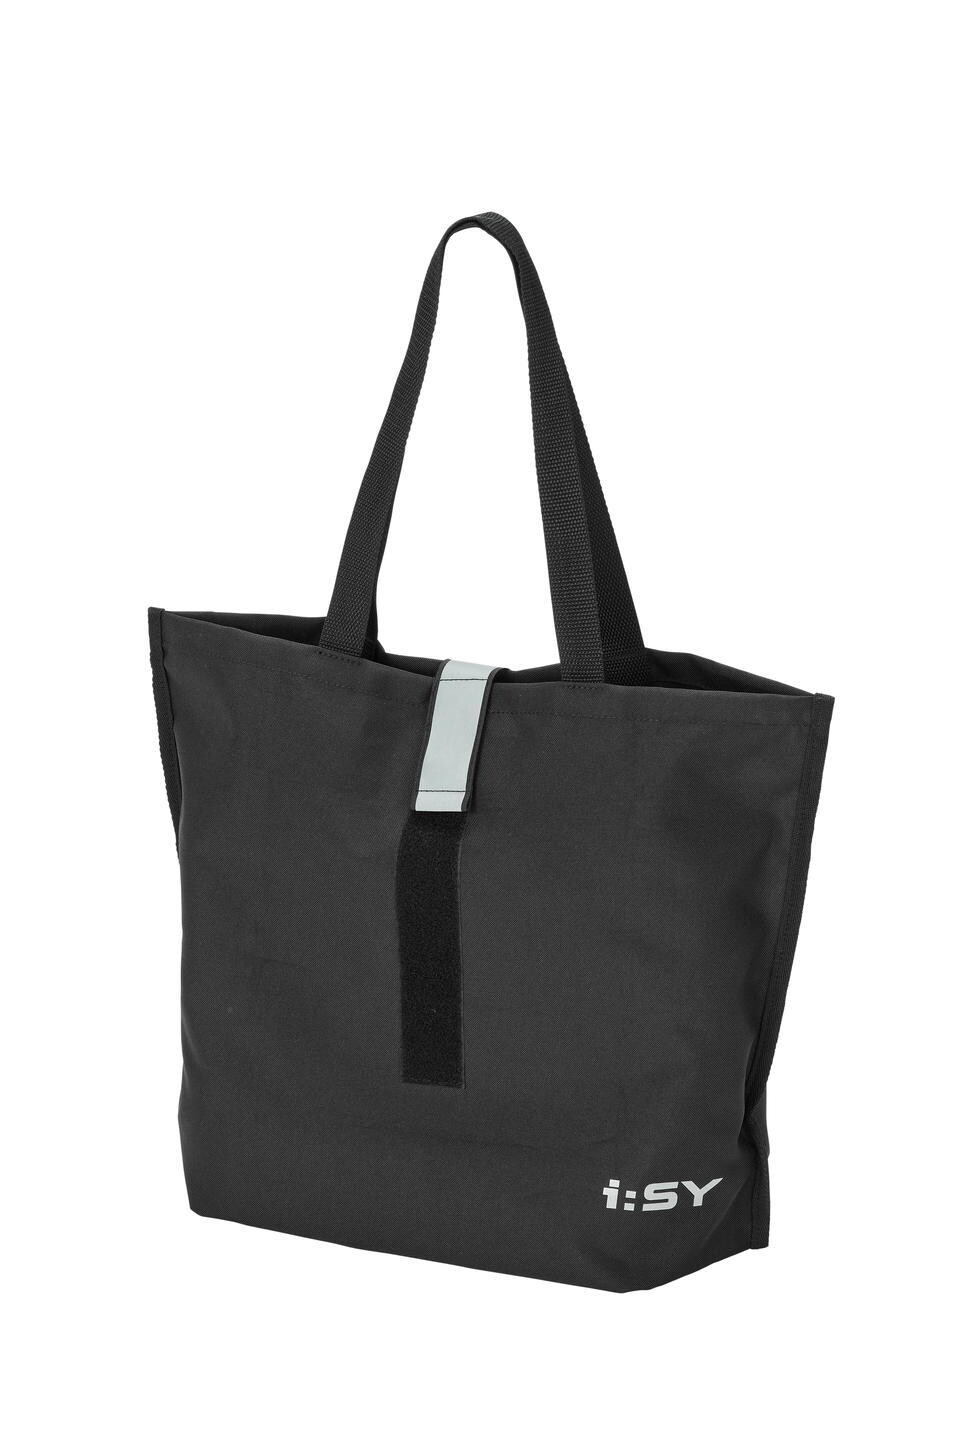 iSY Shopping Bag Tasche für den Frontträger KLICKfix